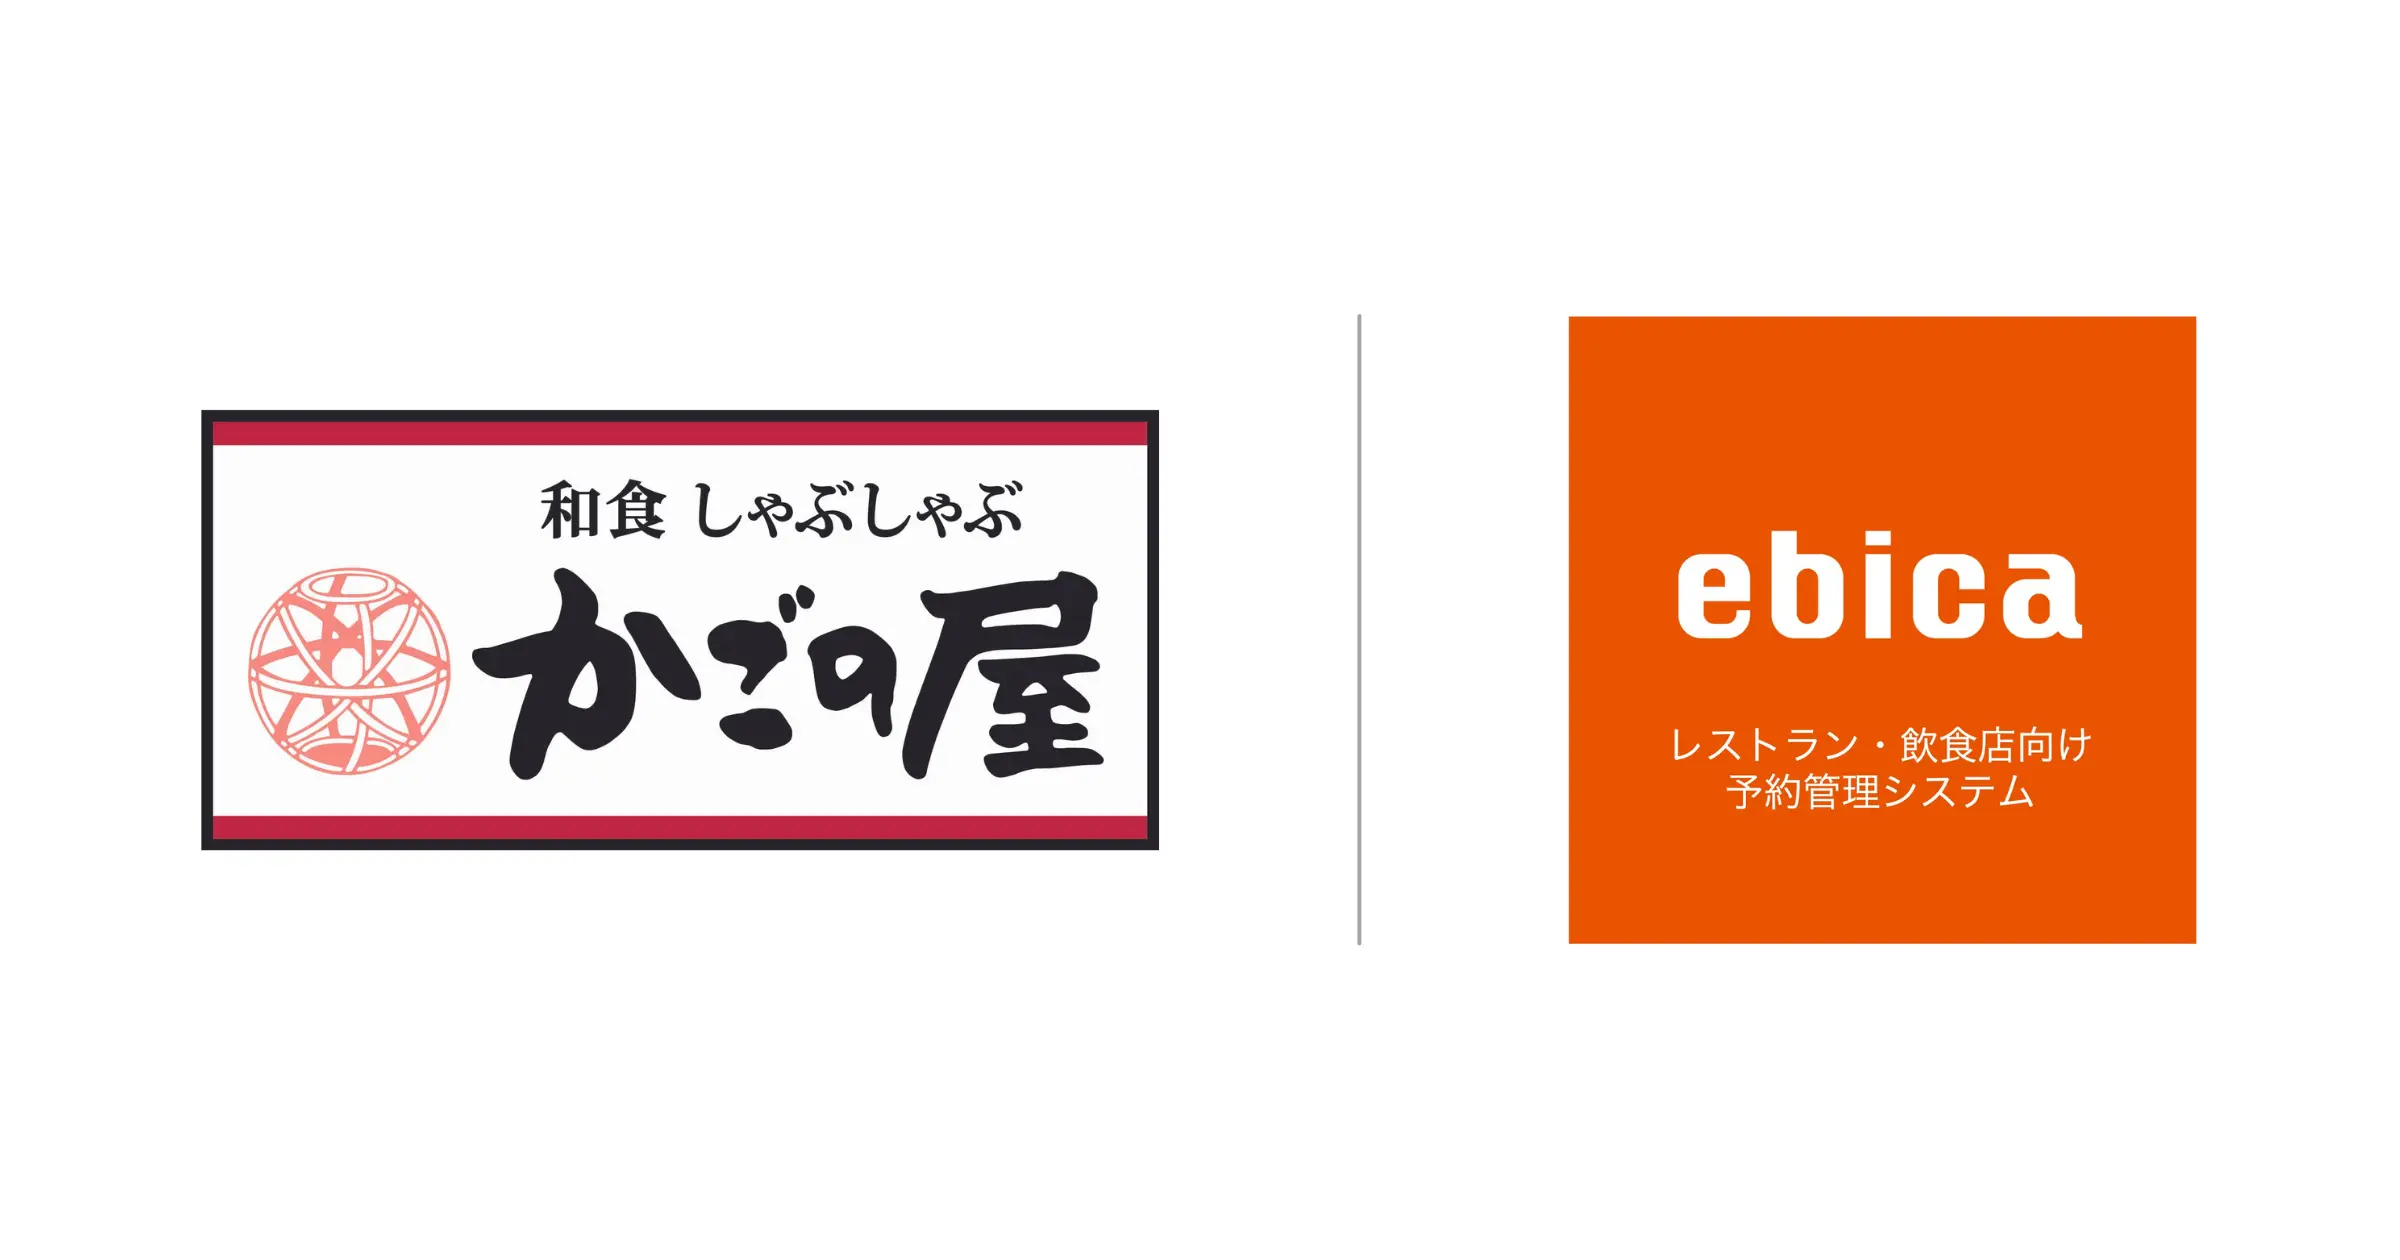 和食・しゃぶしゃぶ「かごの屋」を展開するKRフードサービスが、「ebica」、「AIレセプション」を導入